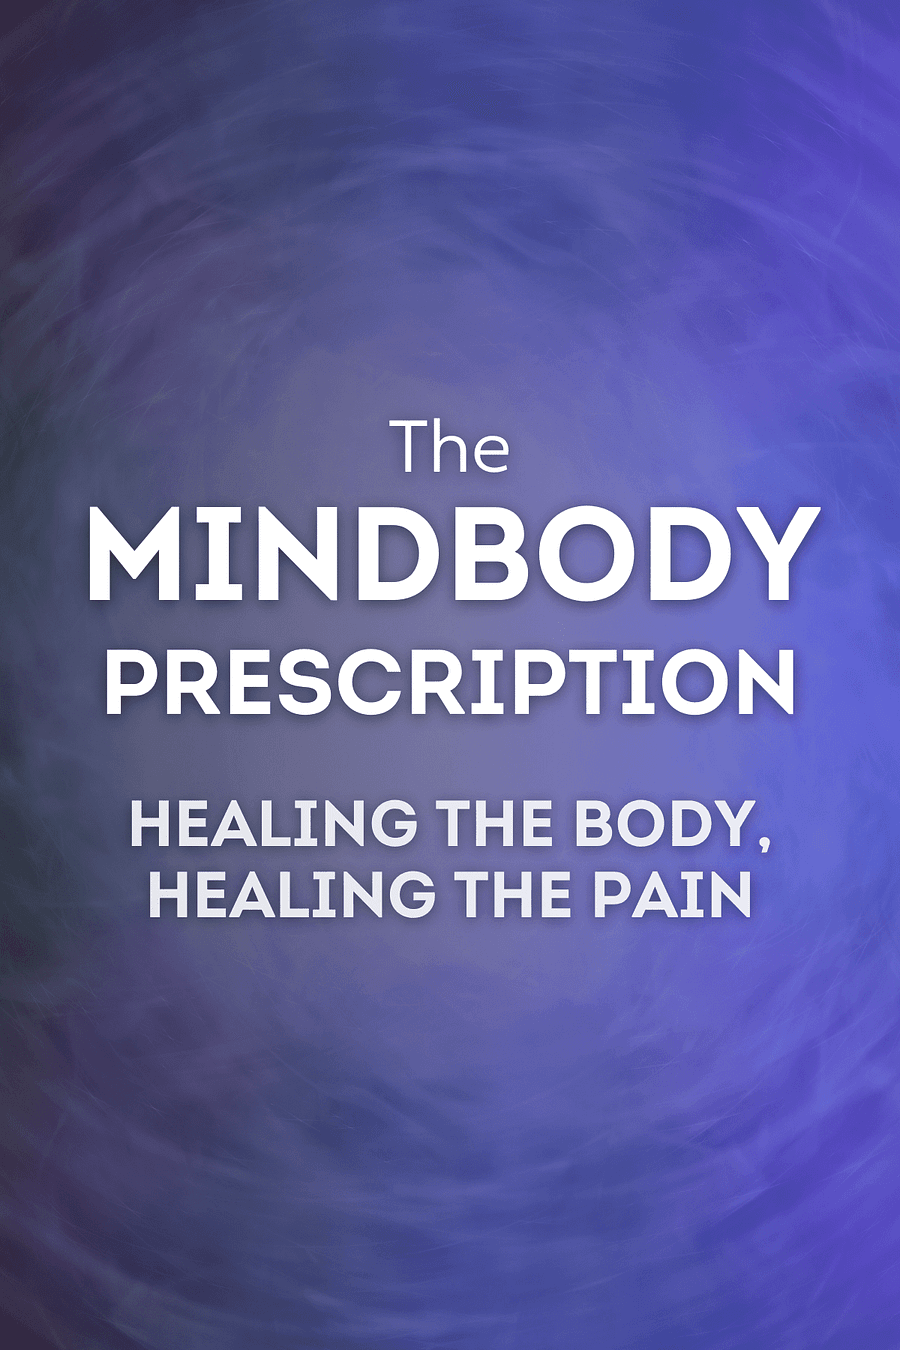 The Mindbody Prescription by John E. Sarno - Book Summary